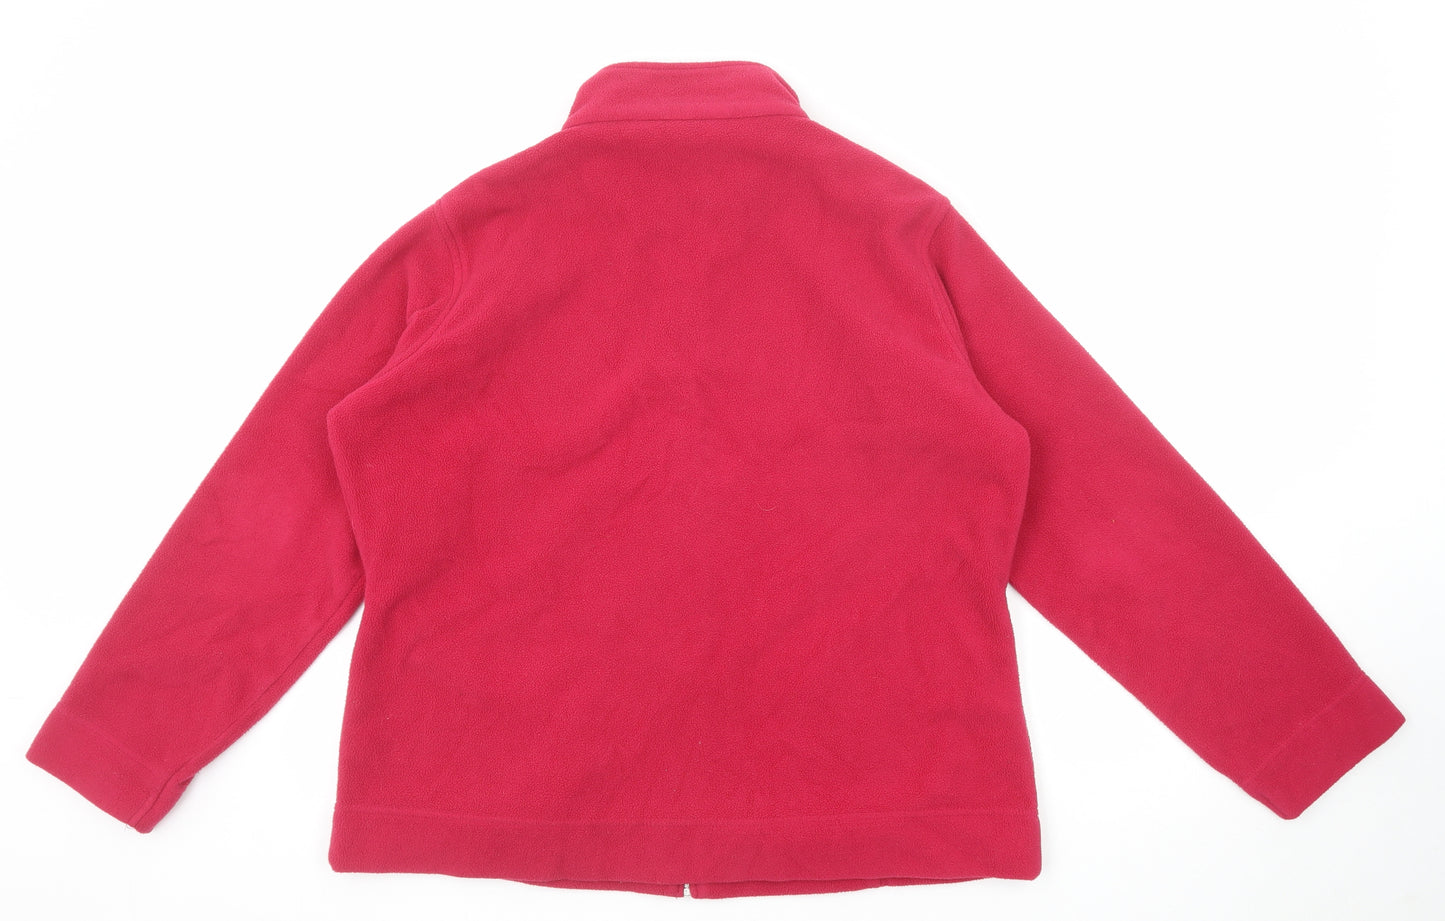 EWM Womens Pink Jacket Size 18 Zip - Size 18-20